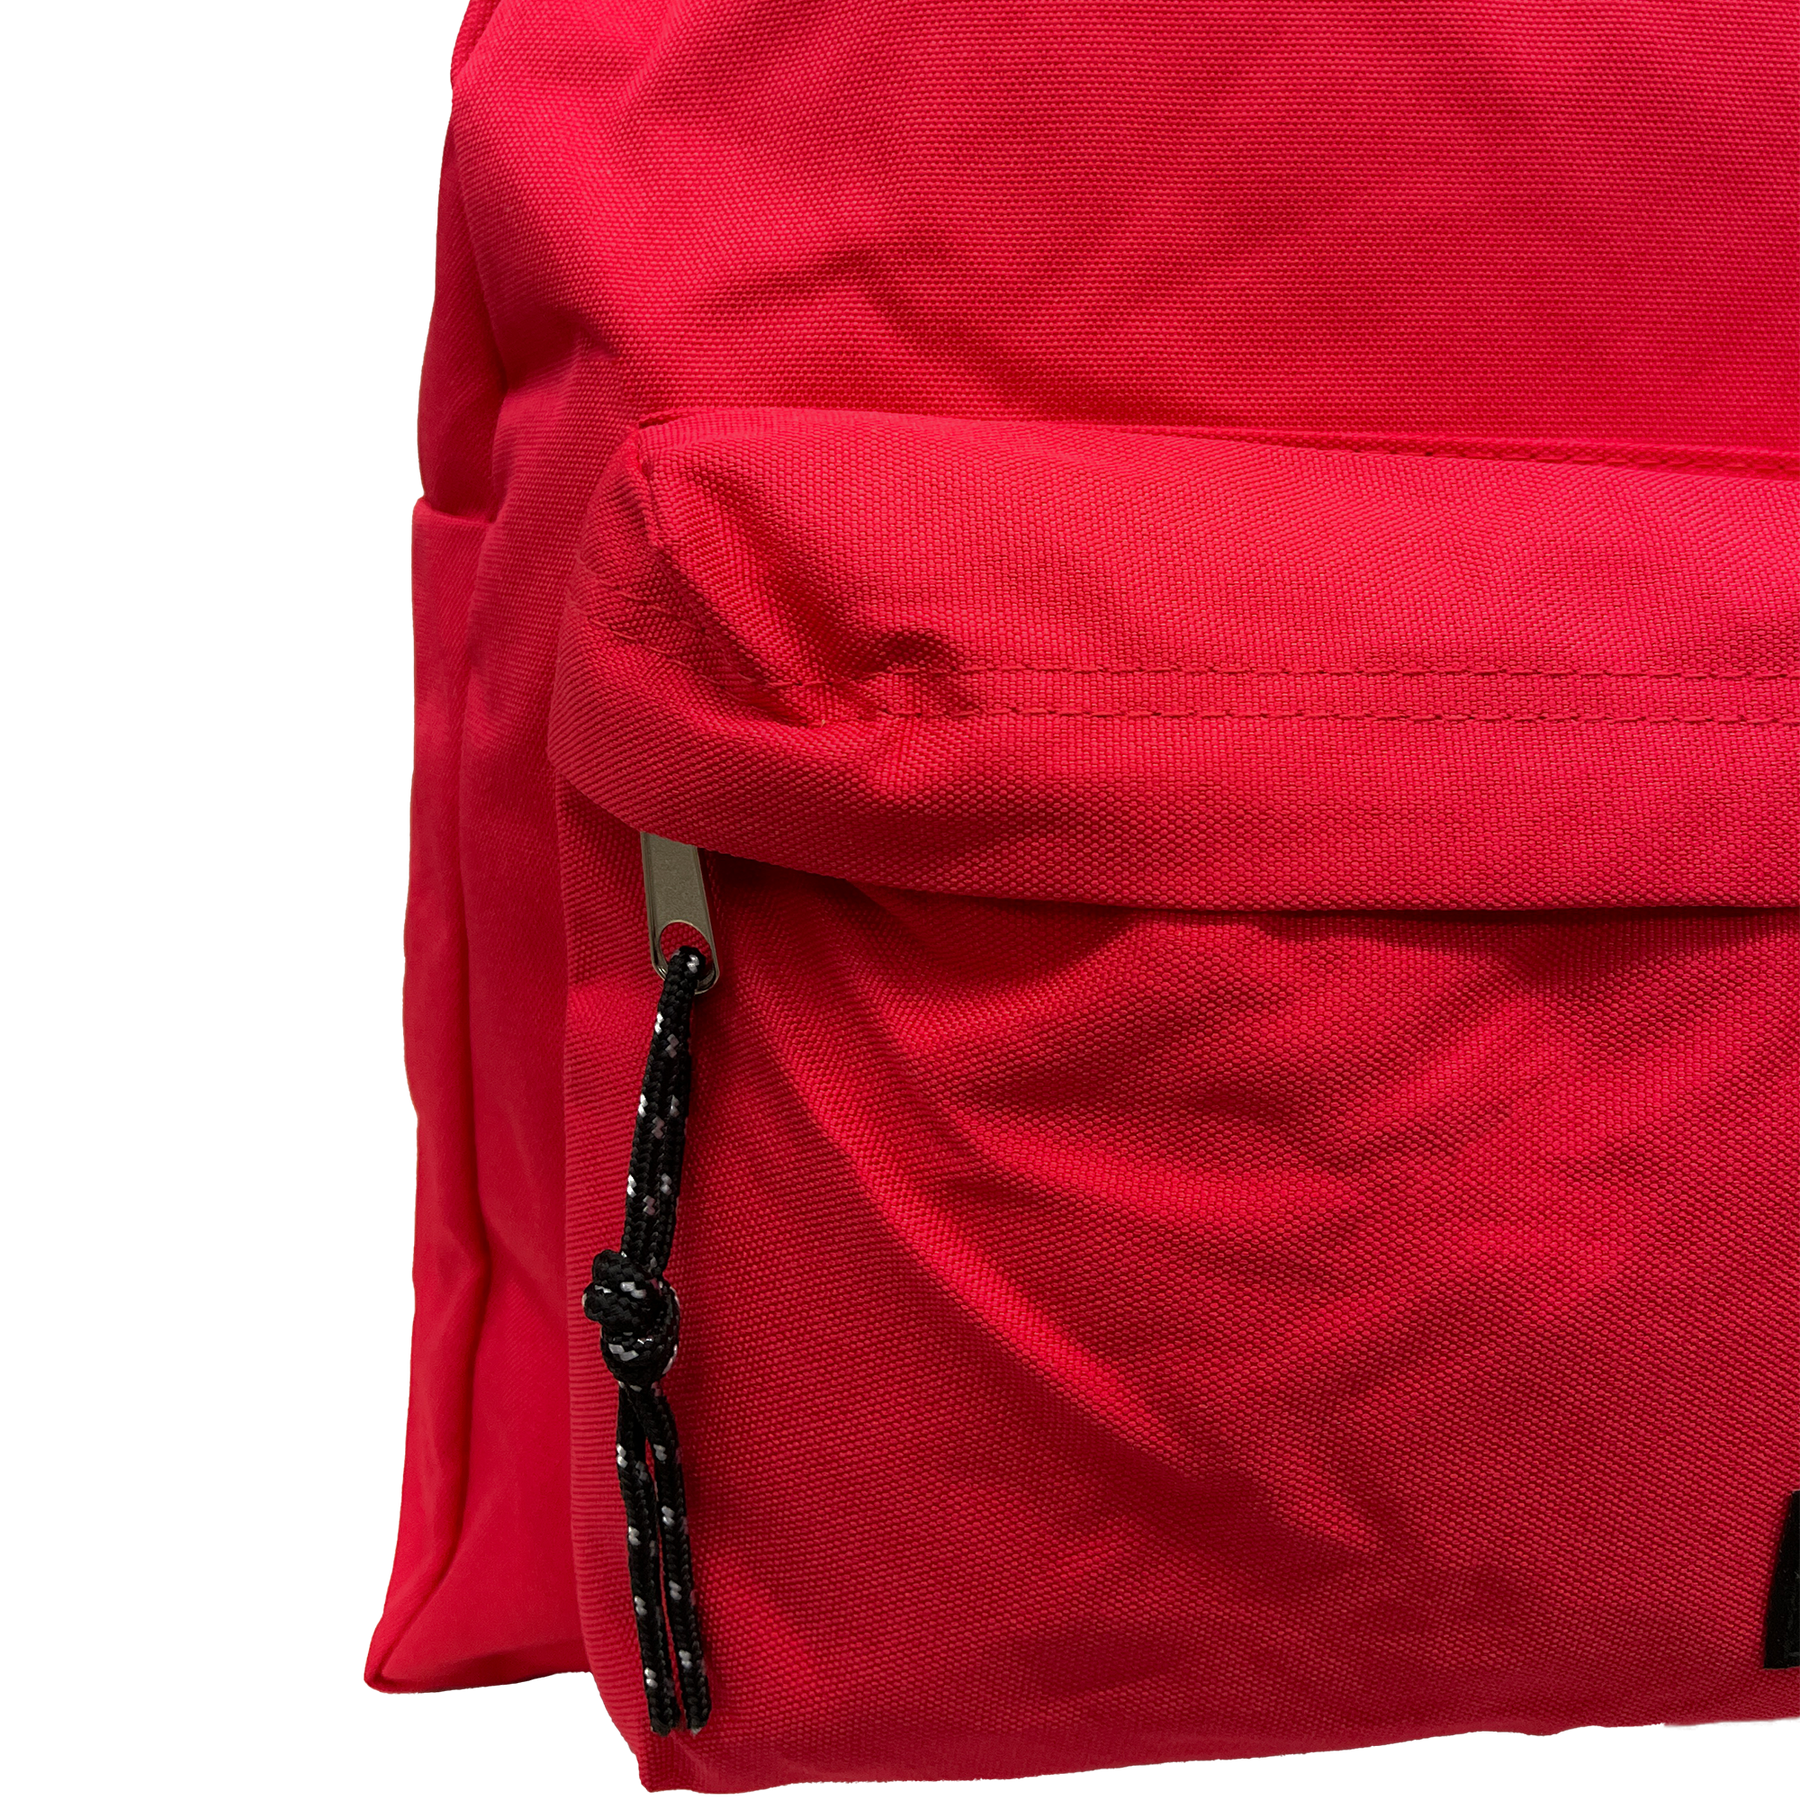 Coveri World - Odolný polyesterový batoh - 44 x 29,5 x 22 cm, 27 litrů